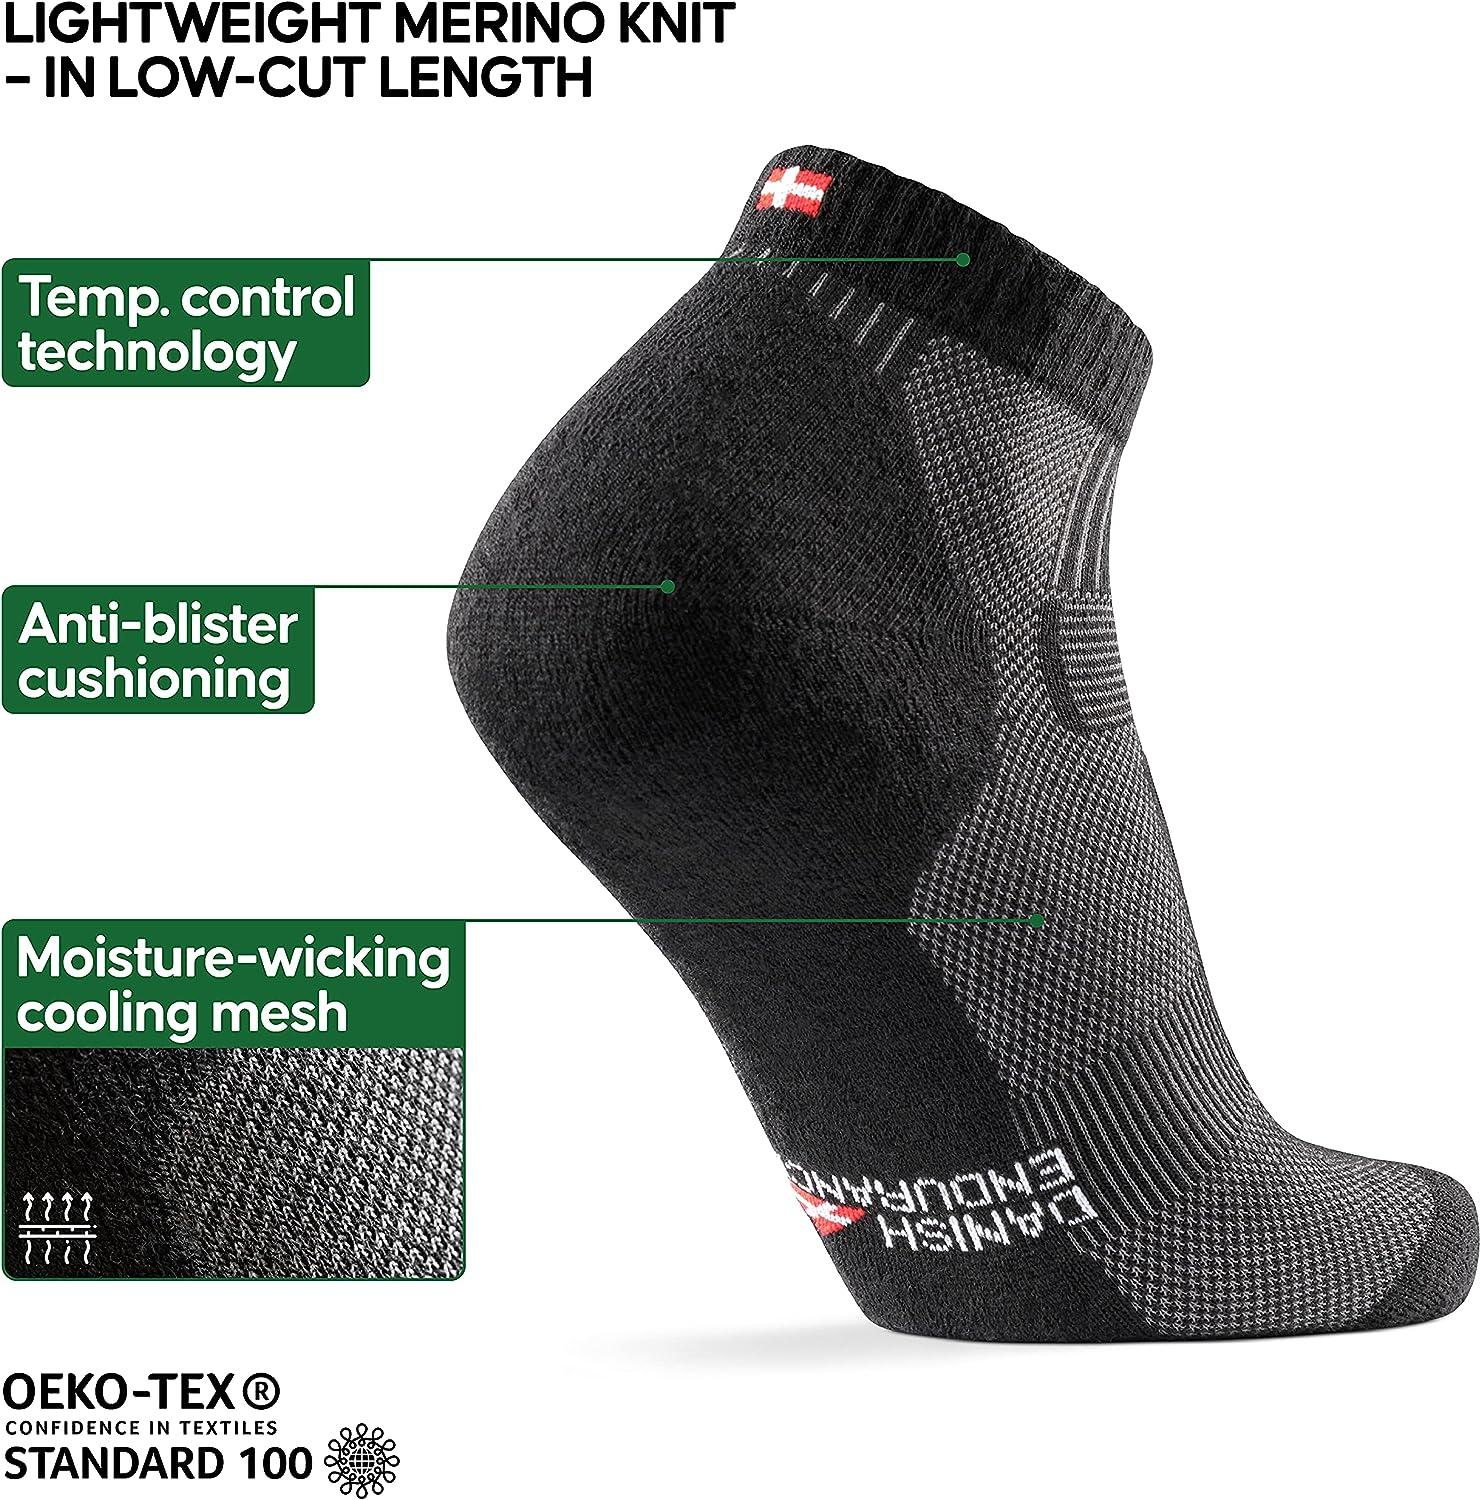 DANISH ENDURANCE 3 Pack Merino Wool Light Hiking Socks for Men